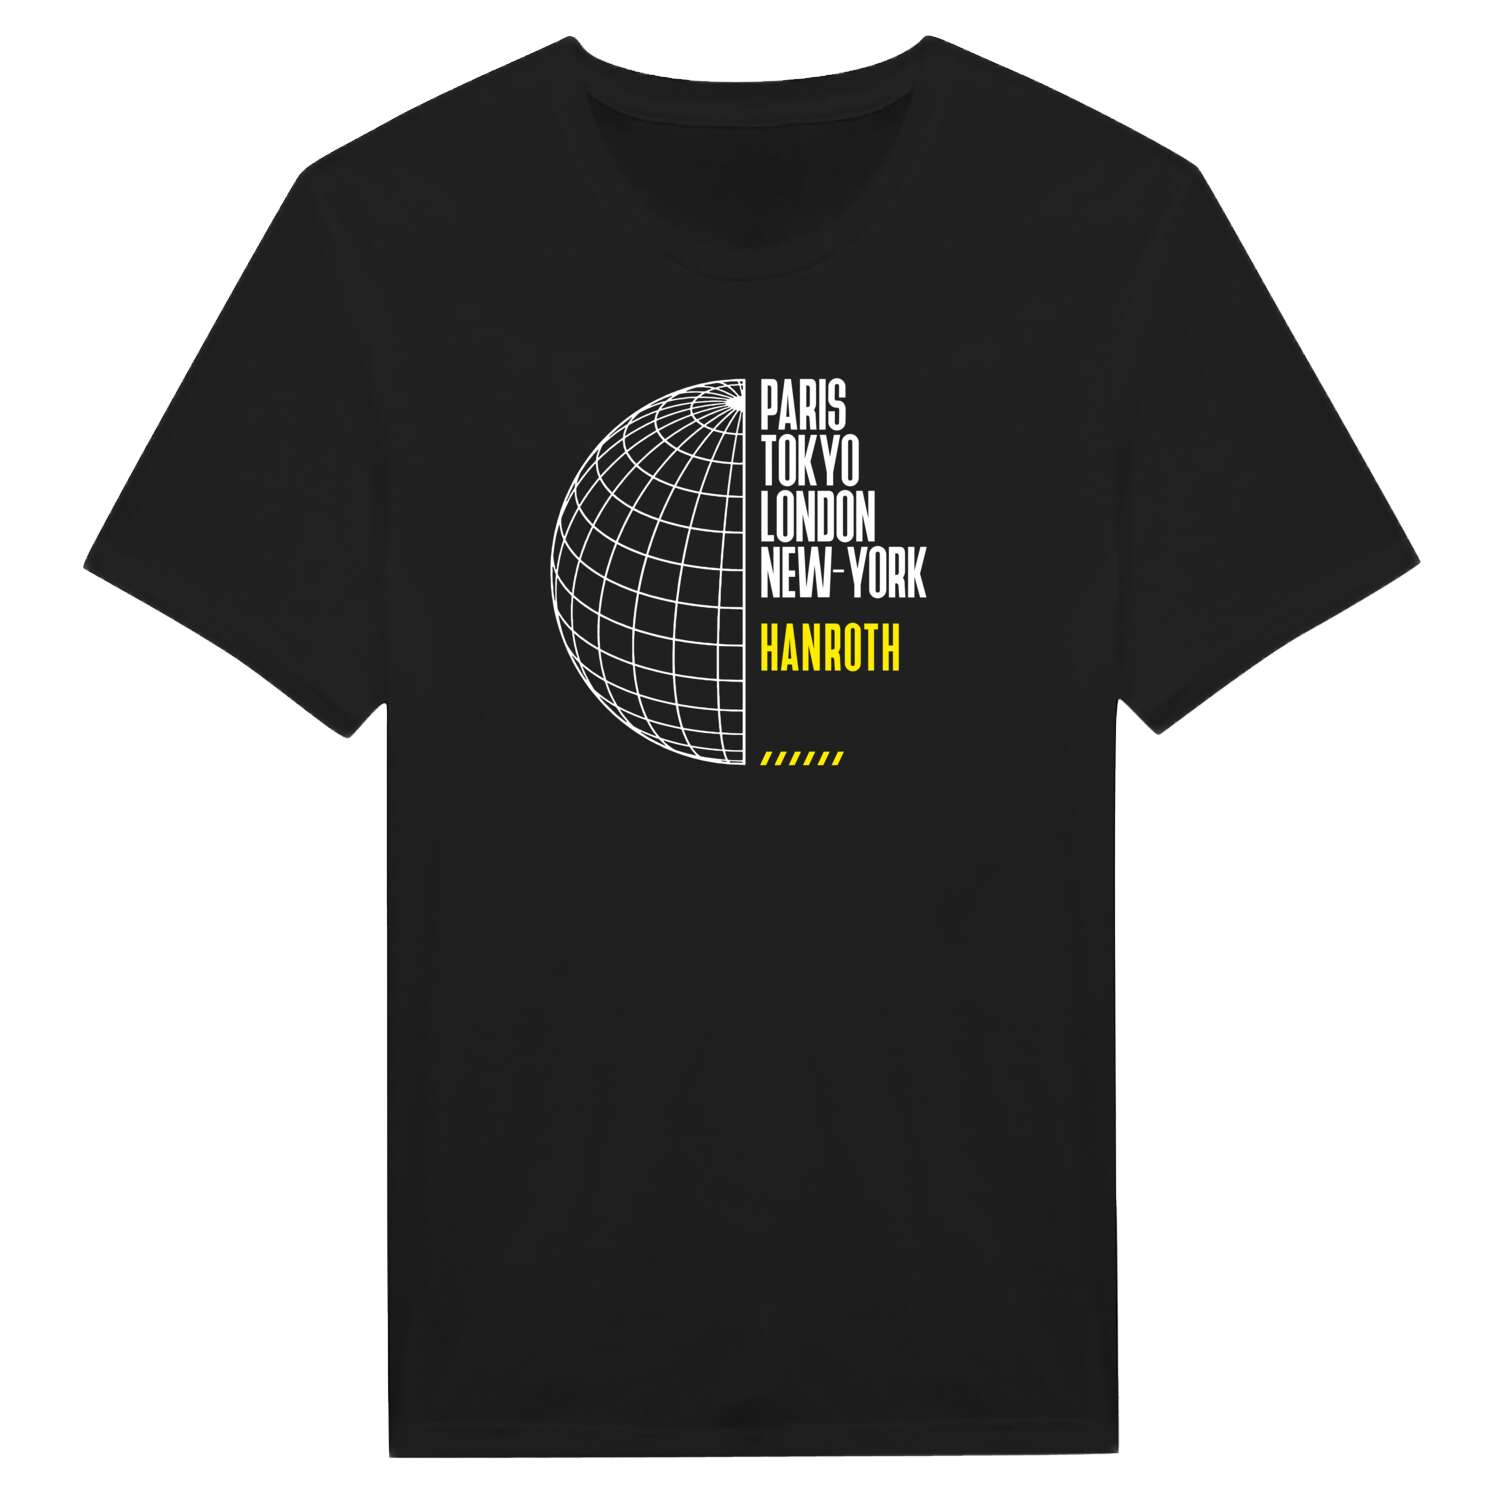 Hanroth T-Shirt »Paris Tokyo London«